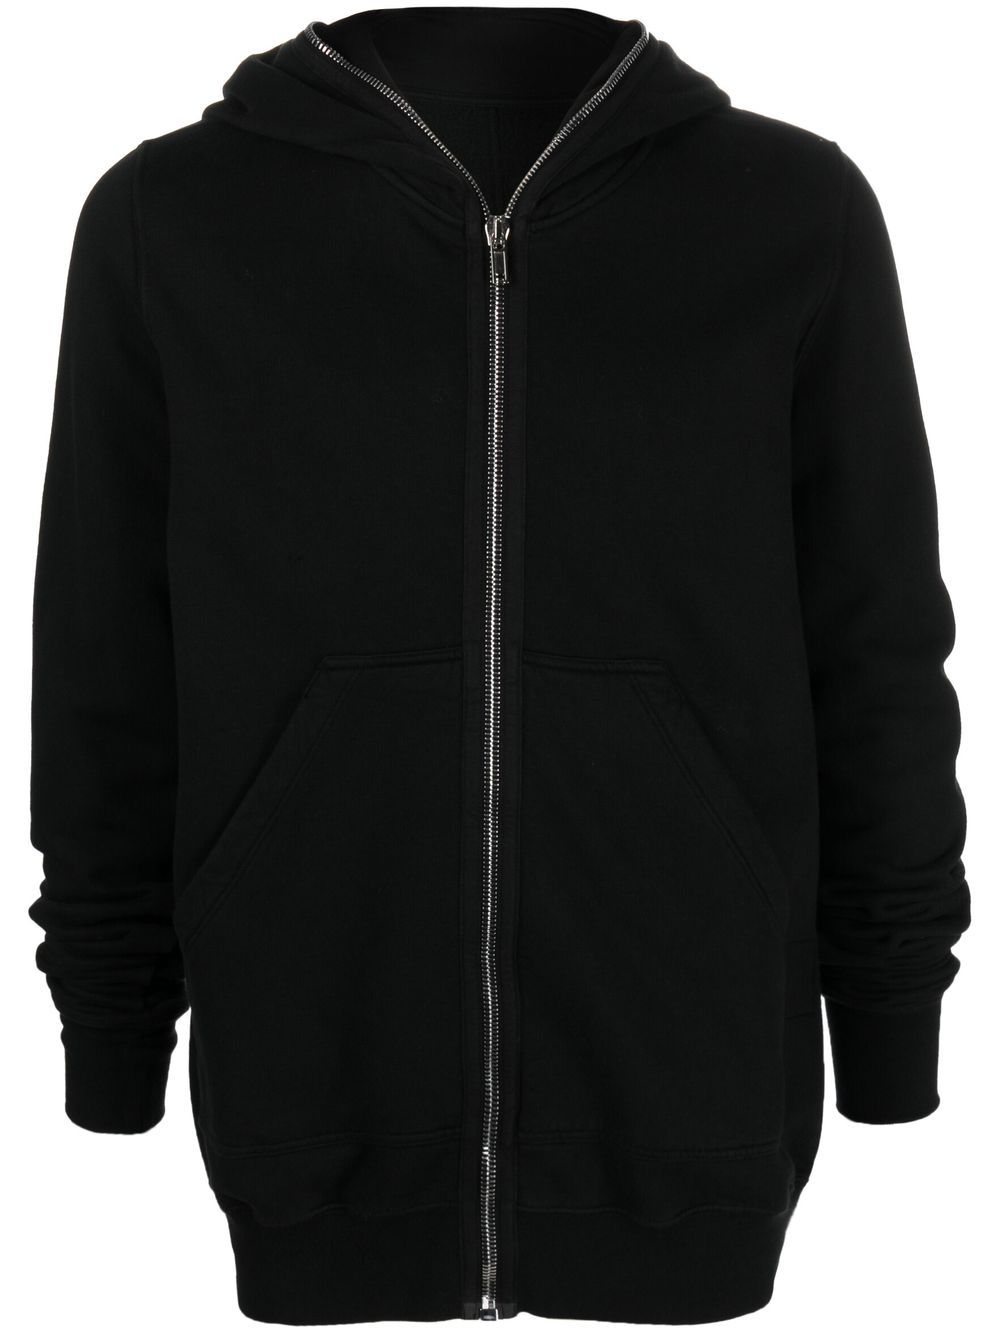 Black hooded sweatshirt - men - RICK OWENS DRKSHDW